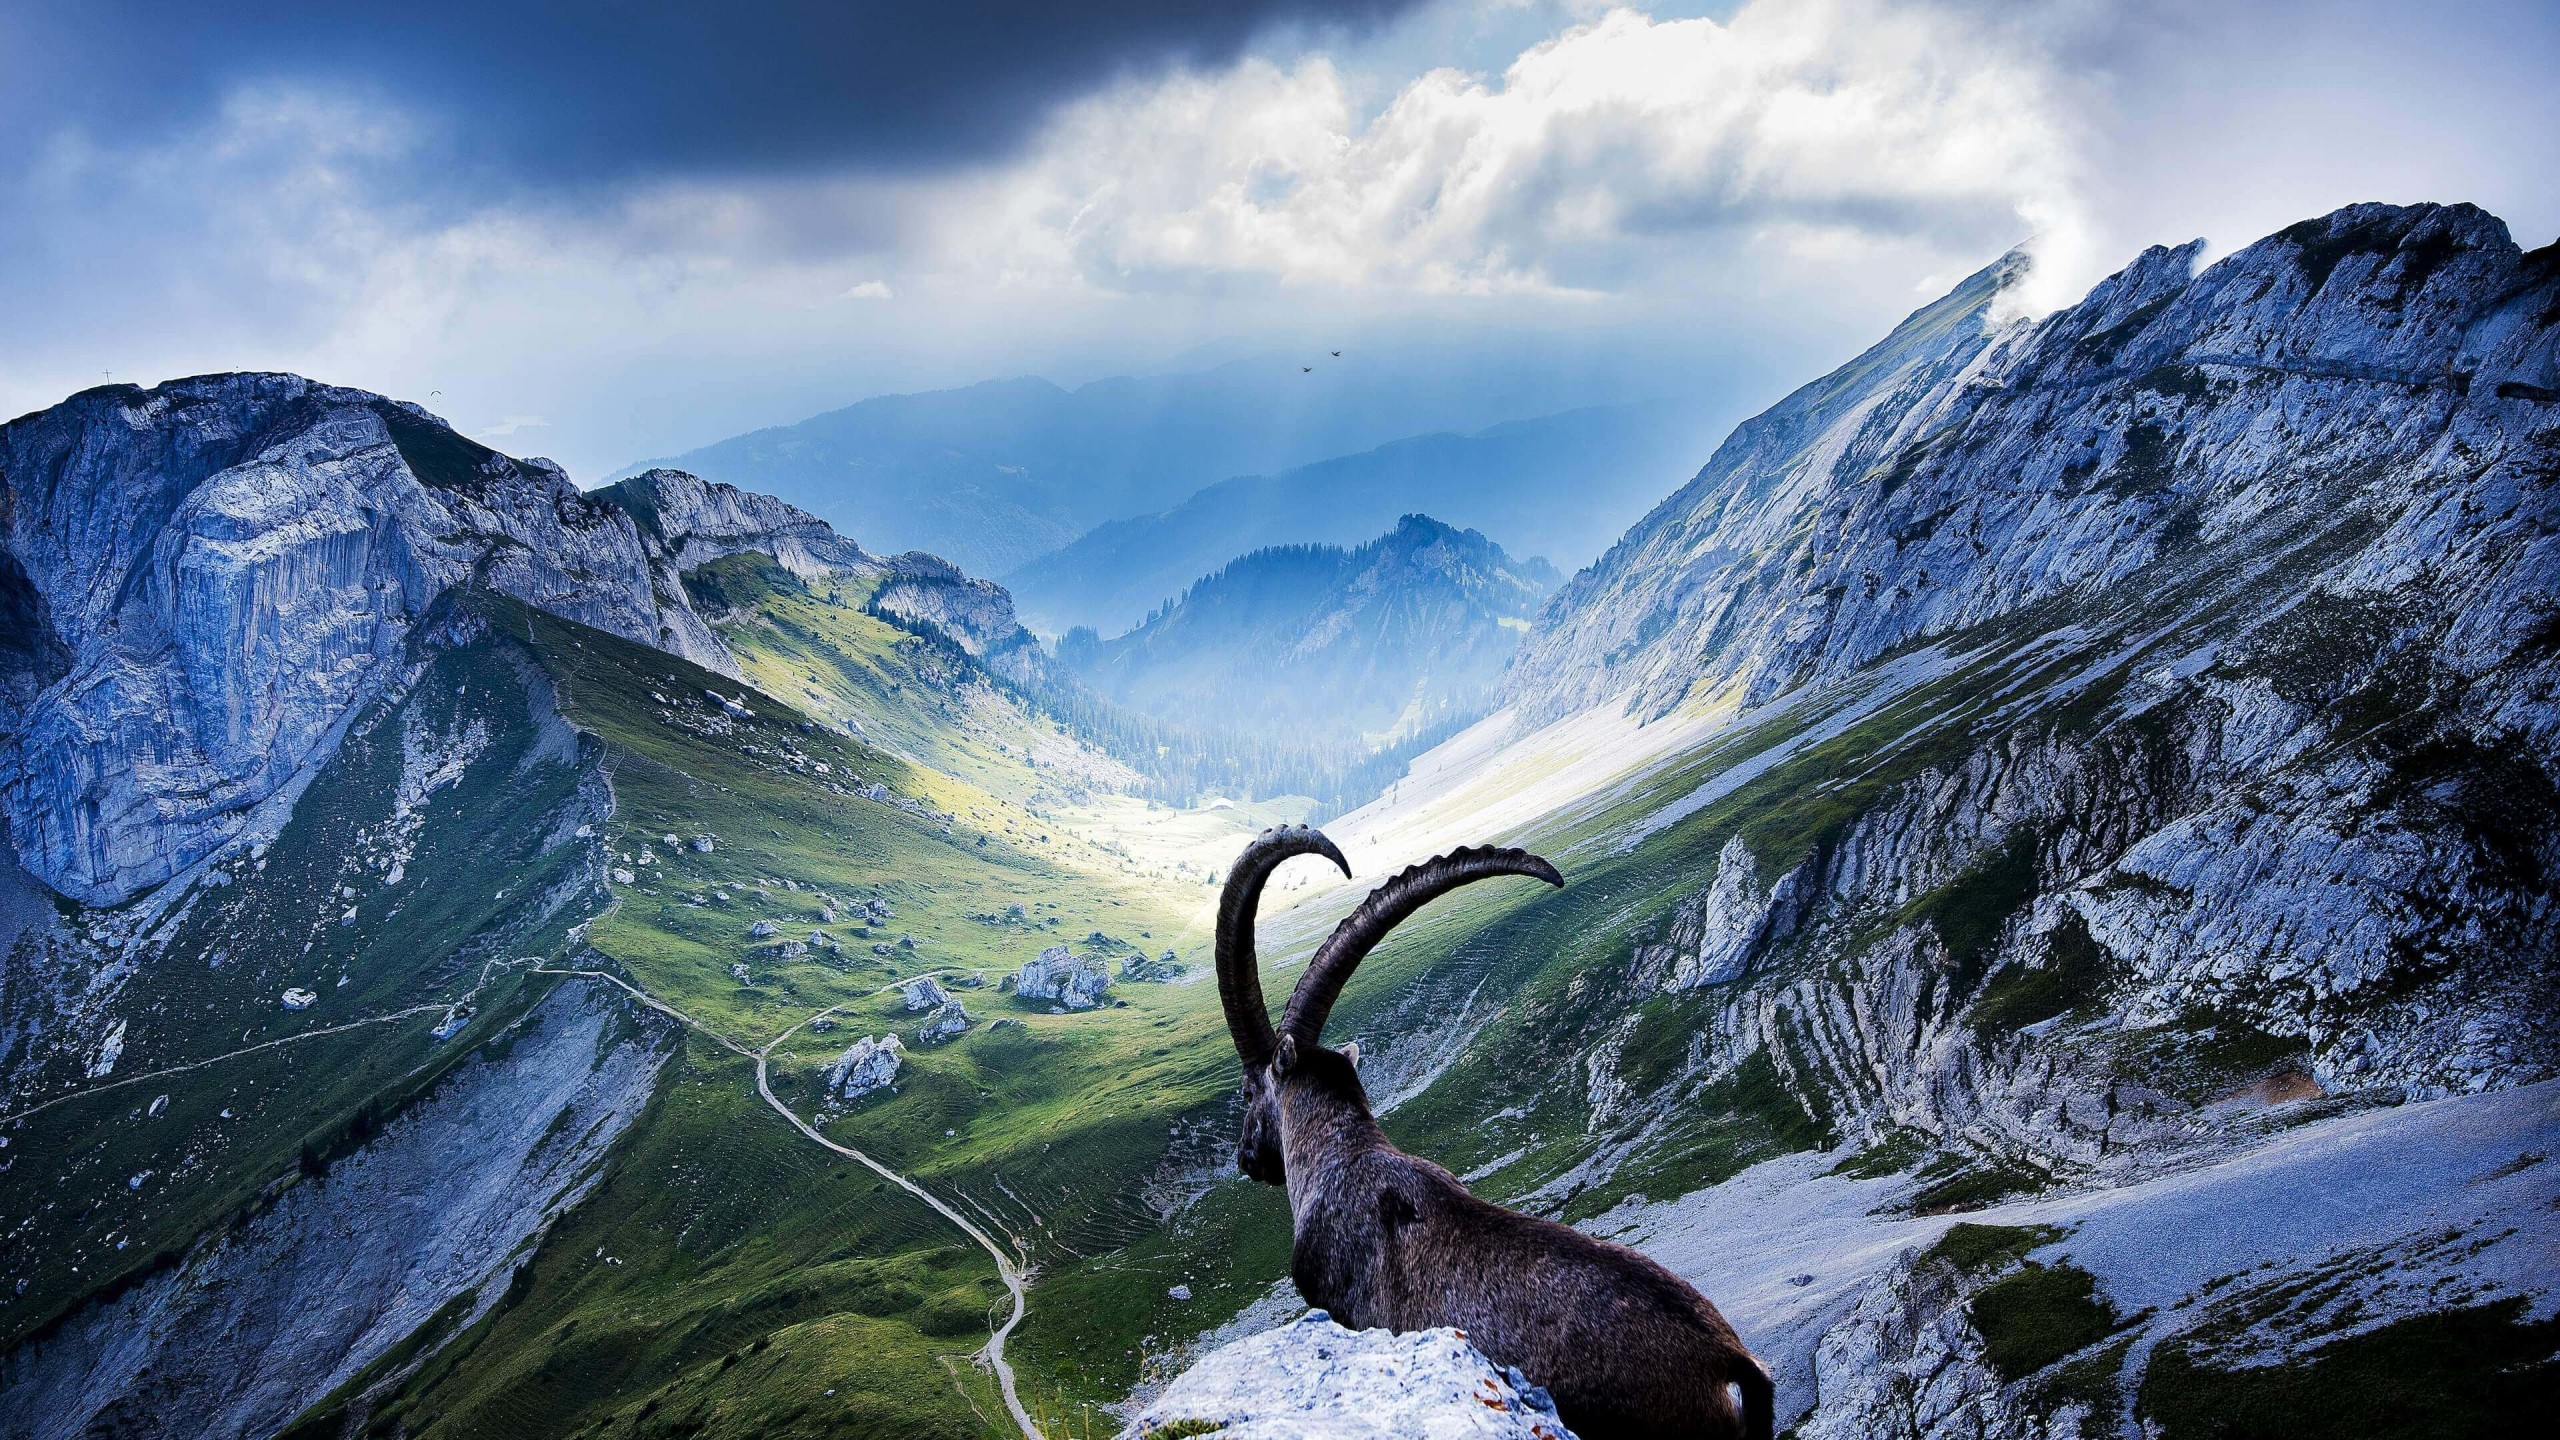 Goat at Pilatus, Switzerland Wallpaper for Social Media YouTube Channel Art